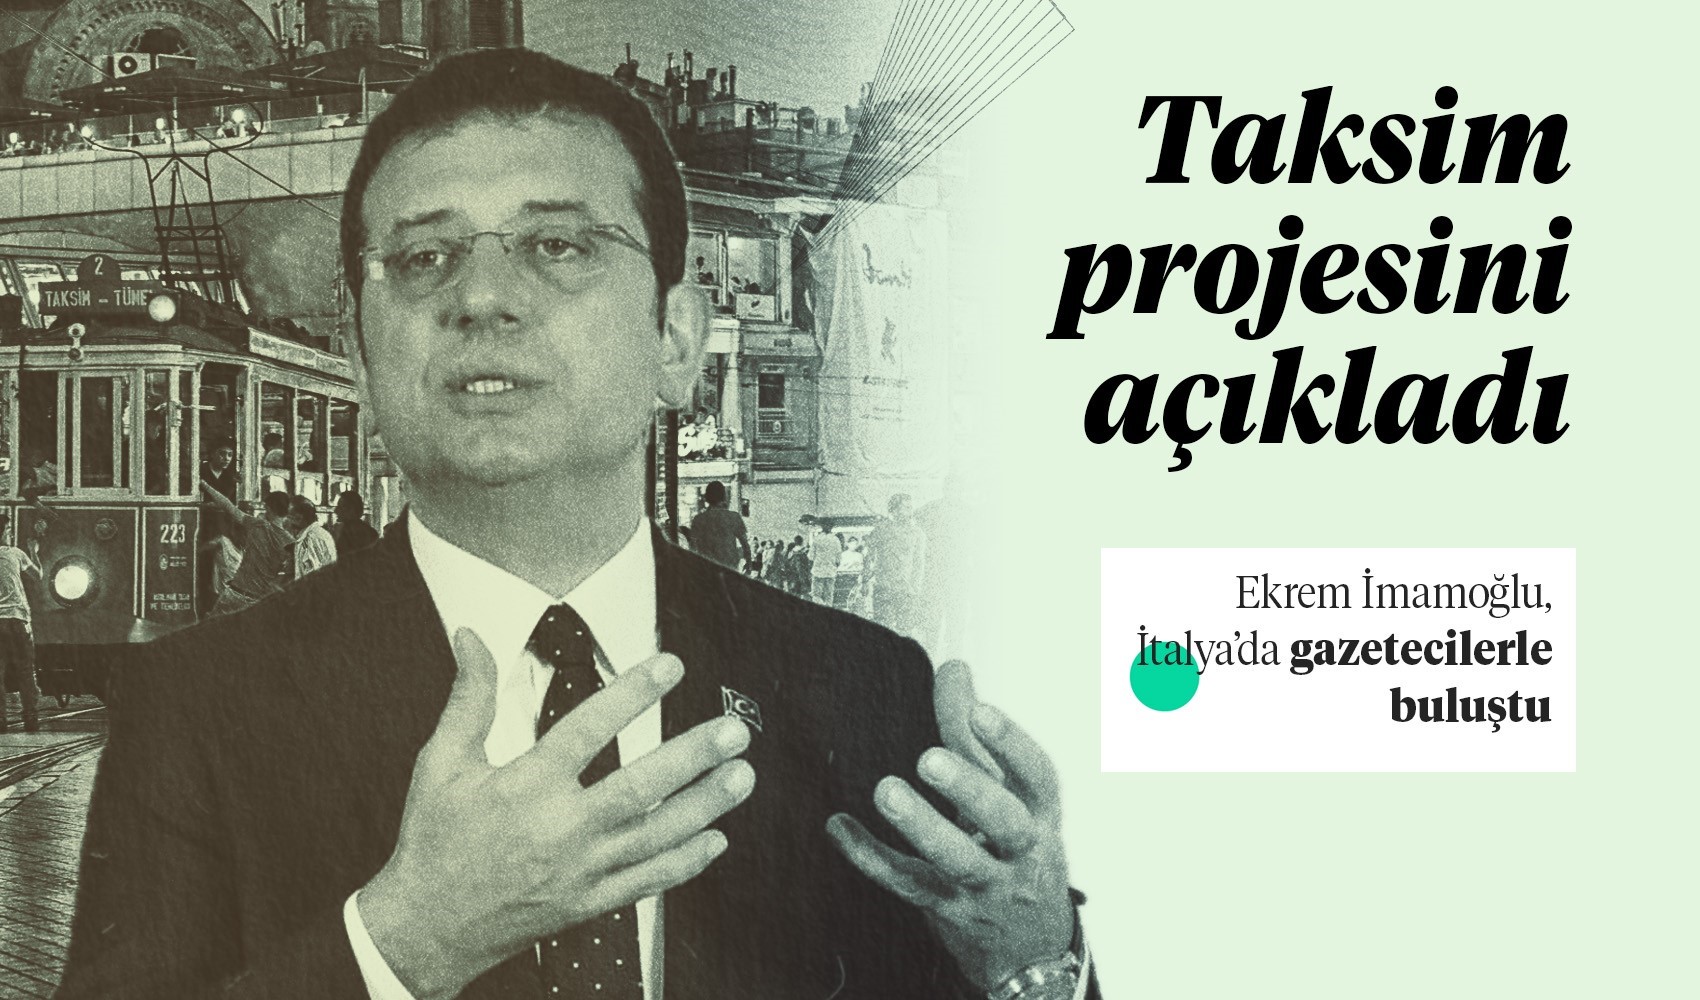 İmamoğlu, Taksim projesini açıkladı!